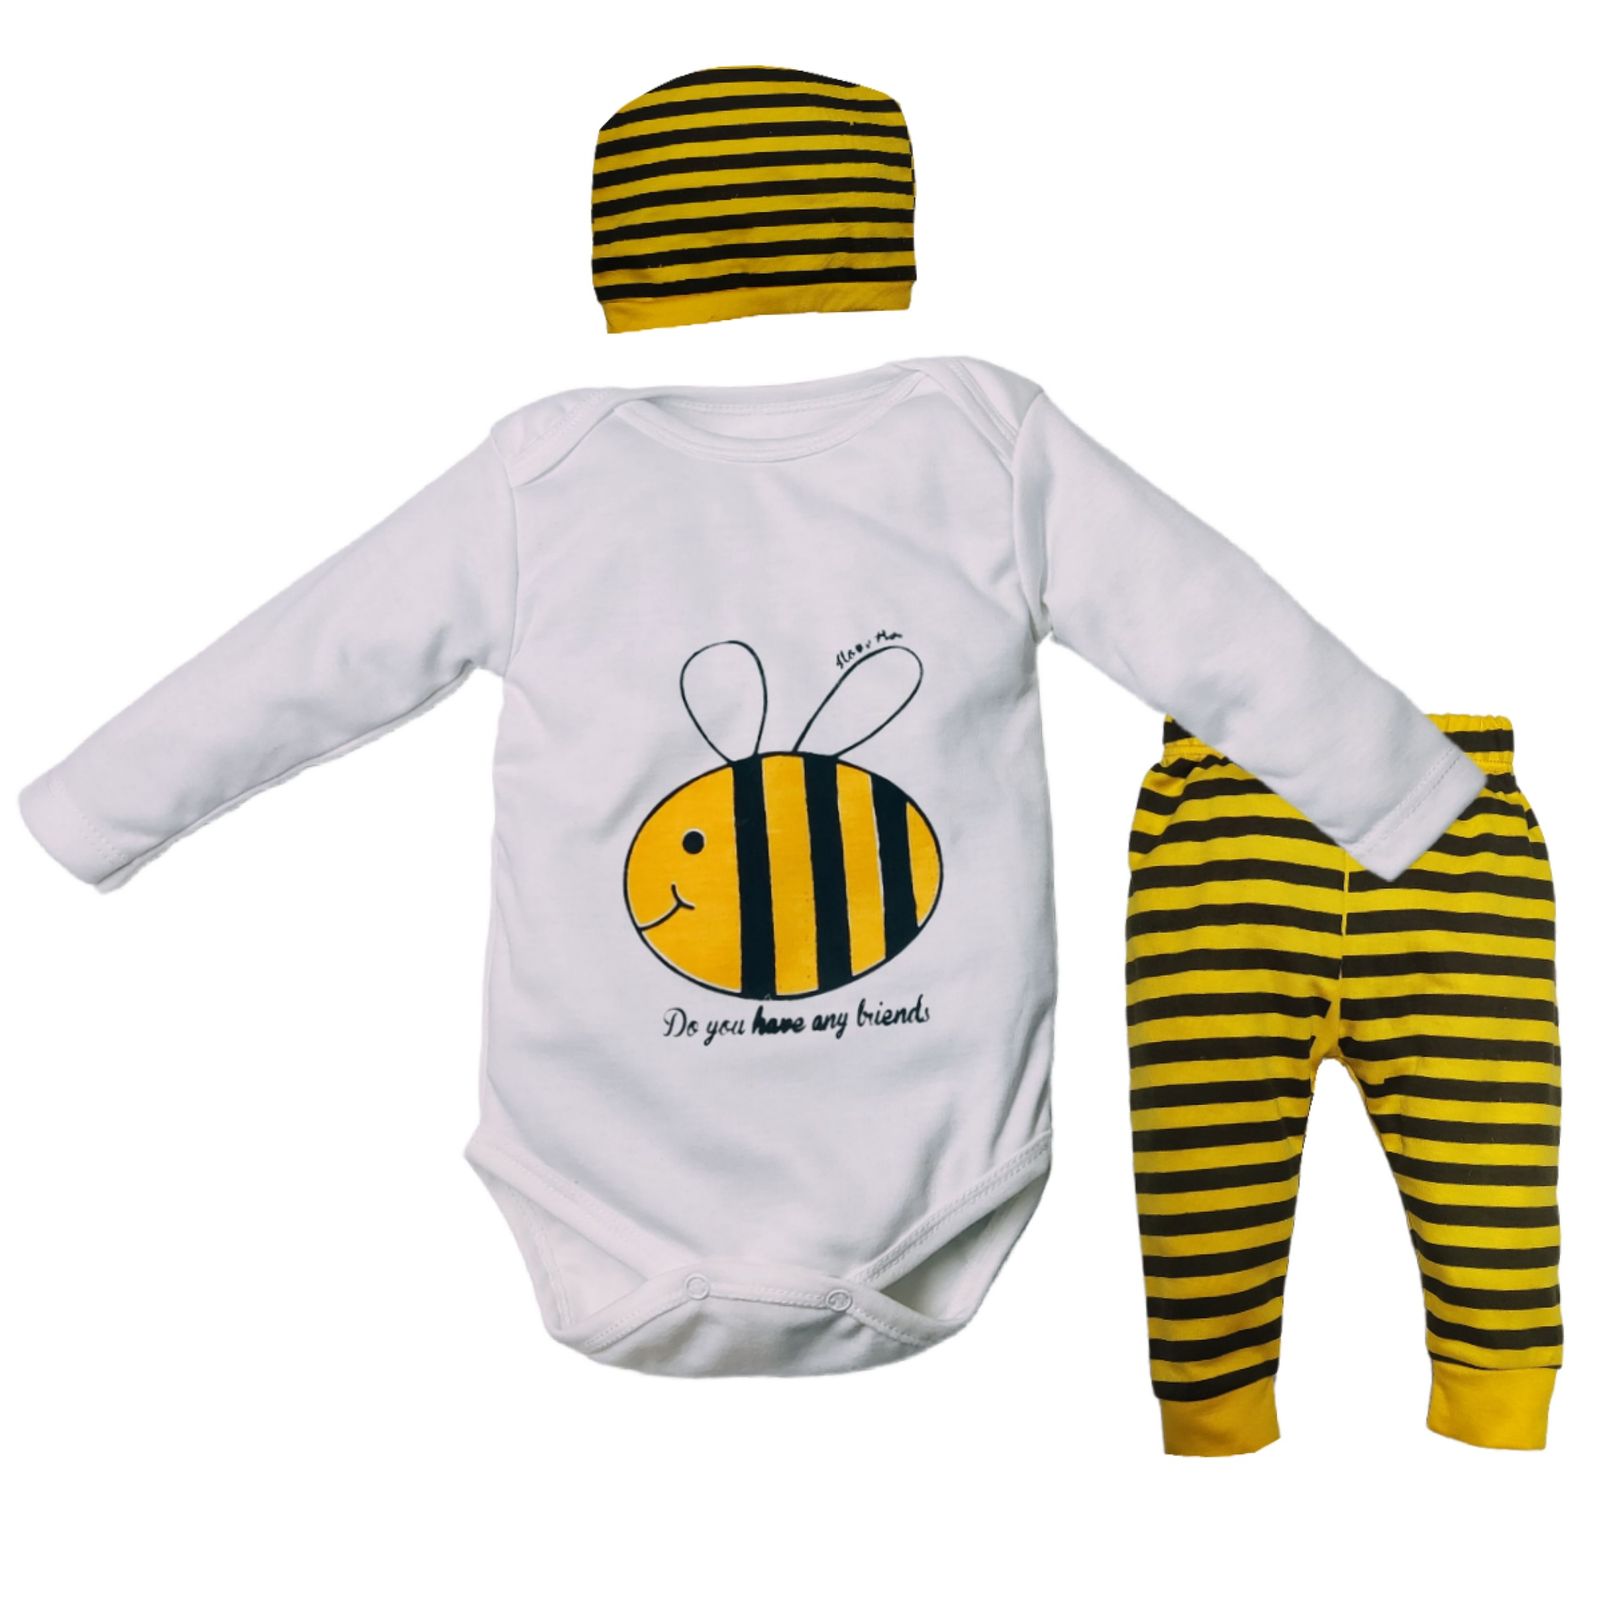 ست 3 تکه لباس نوزادی مدل زنبور کد M10 -  - 1